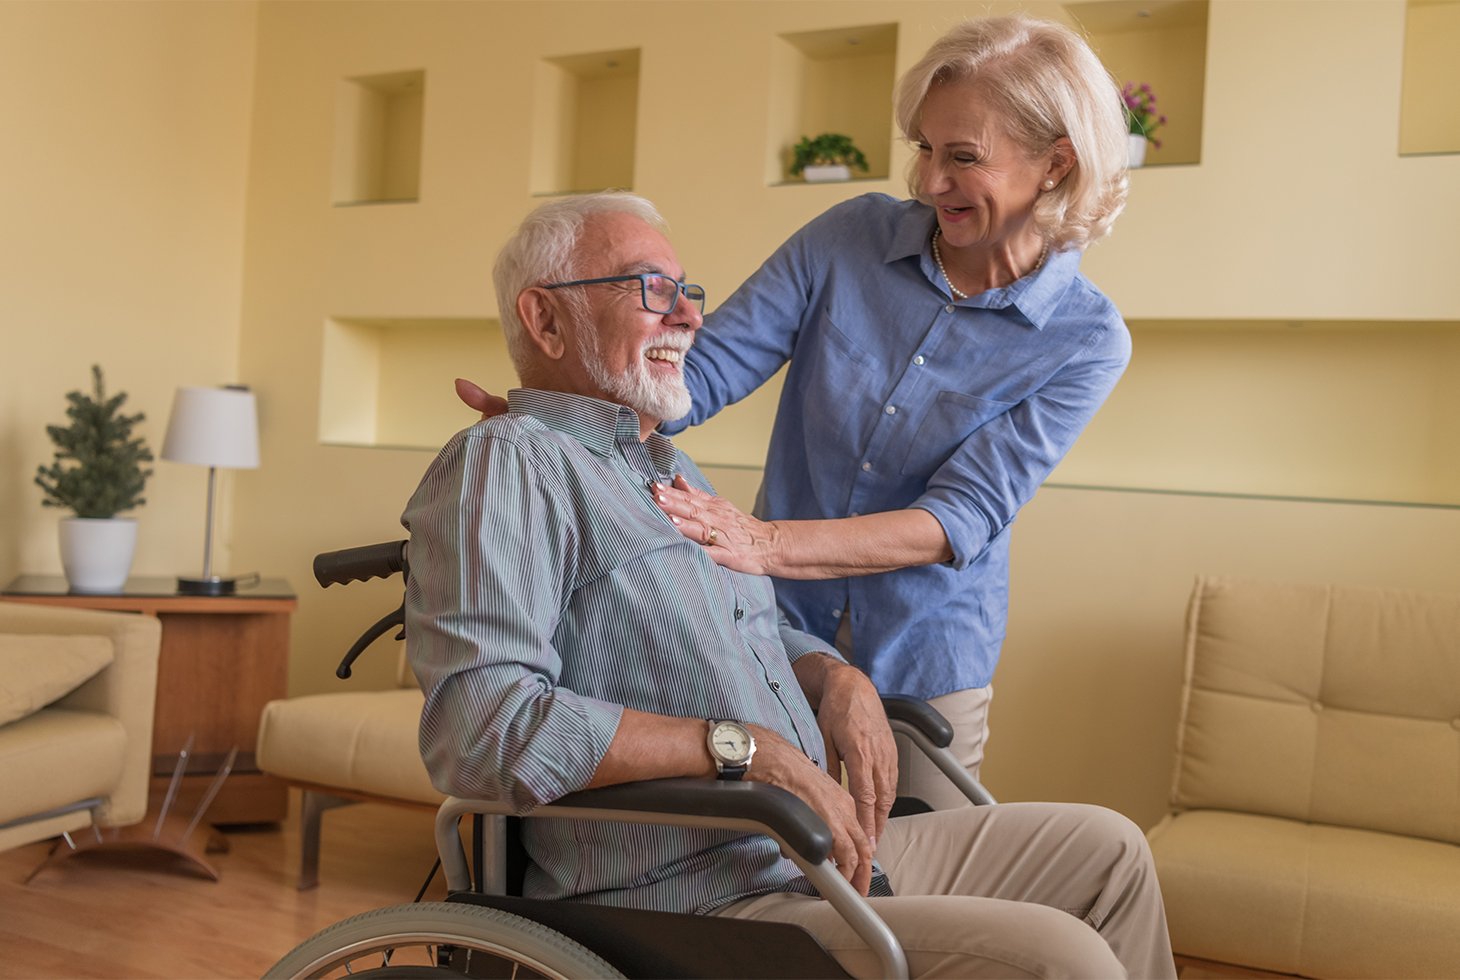 Un senior en fauteuil roulant, échange de manière joviale avec sa femme. Visuel pour illustrer les solutions adaptées pour gérer l’incontinence en situation de handicap.